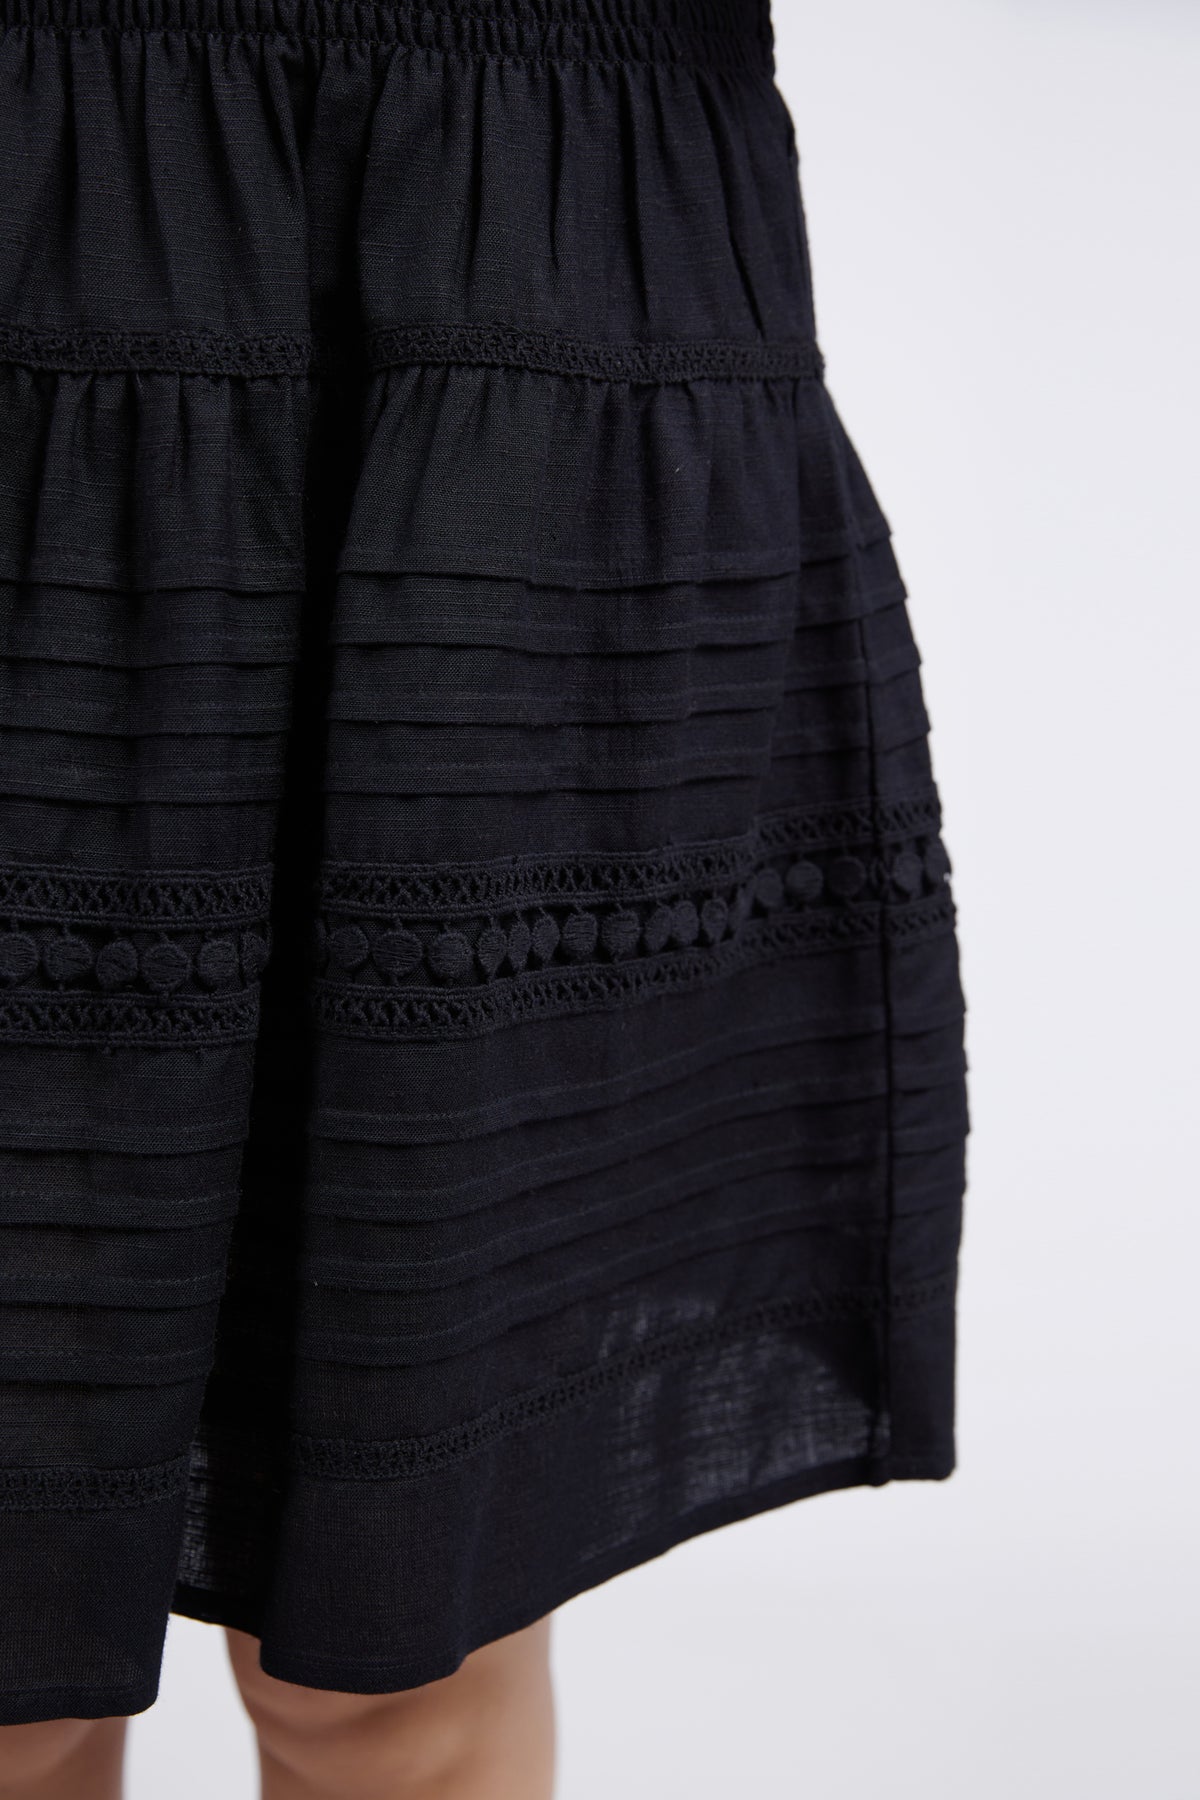 Market Skirt Black